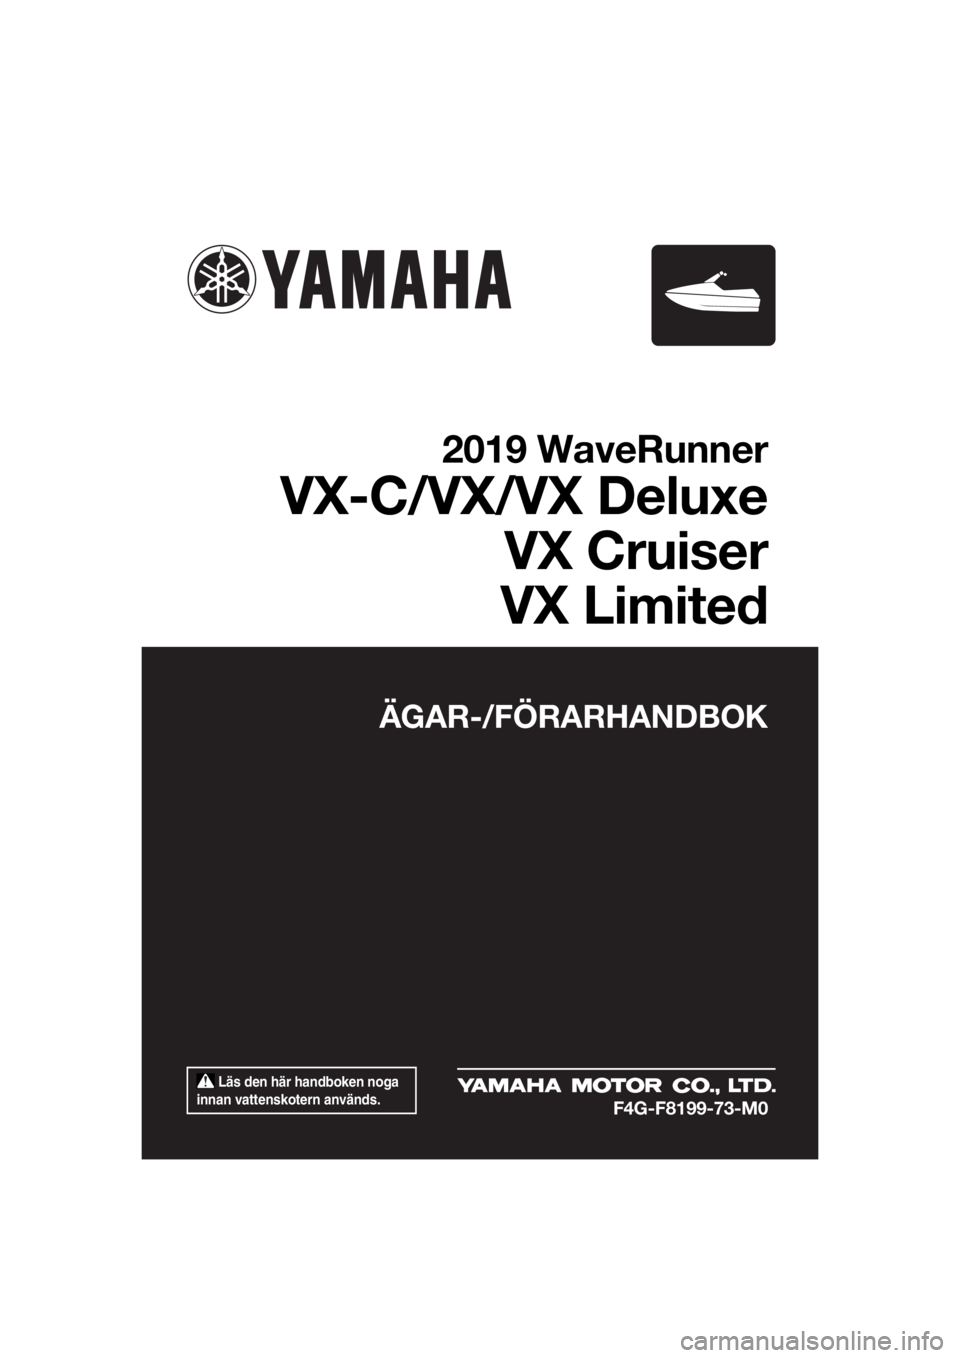 YAMAHA VX 2019  Bruksanvisningar (in Swedish)  Läs den här handboken noga 
innan vattenskotern används.
ÄGAR-/FÖRARHANDBOK
2019 WaveRunner
VX-C/VX/VX Deluxe
VX Cruiser
VX Limited
F4G-F8199-73-M0
UF4G73M0.book  Page 1  Thursday, May 24, 2018 